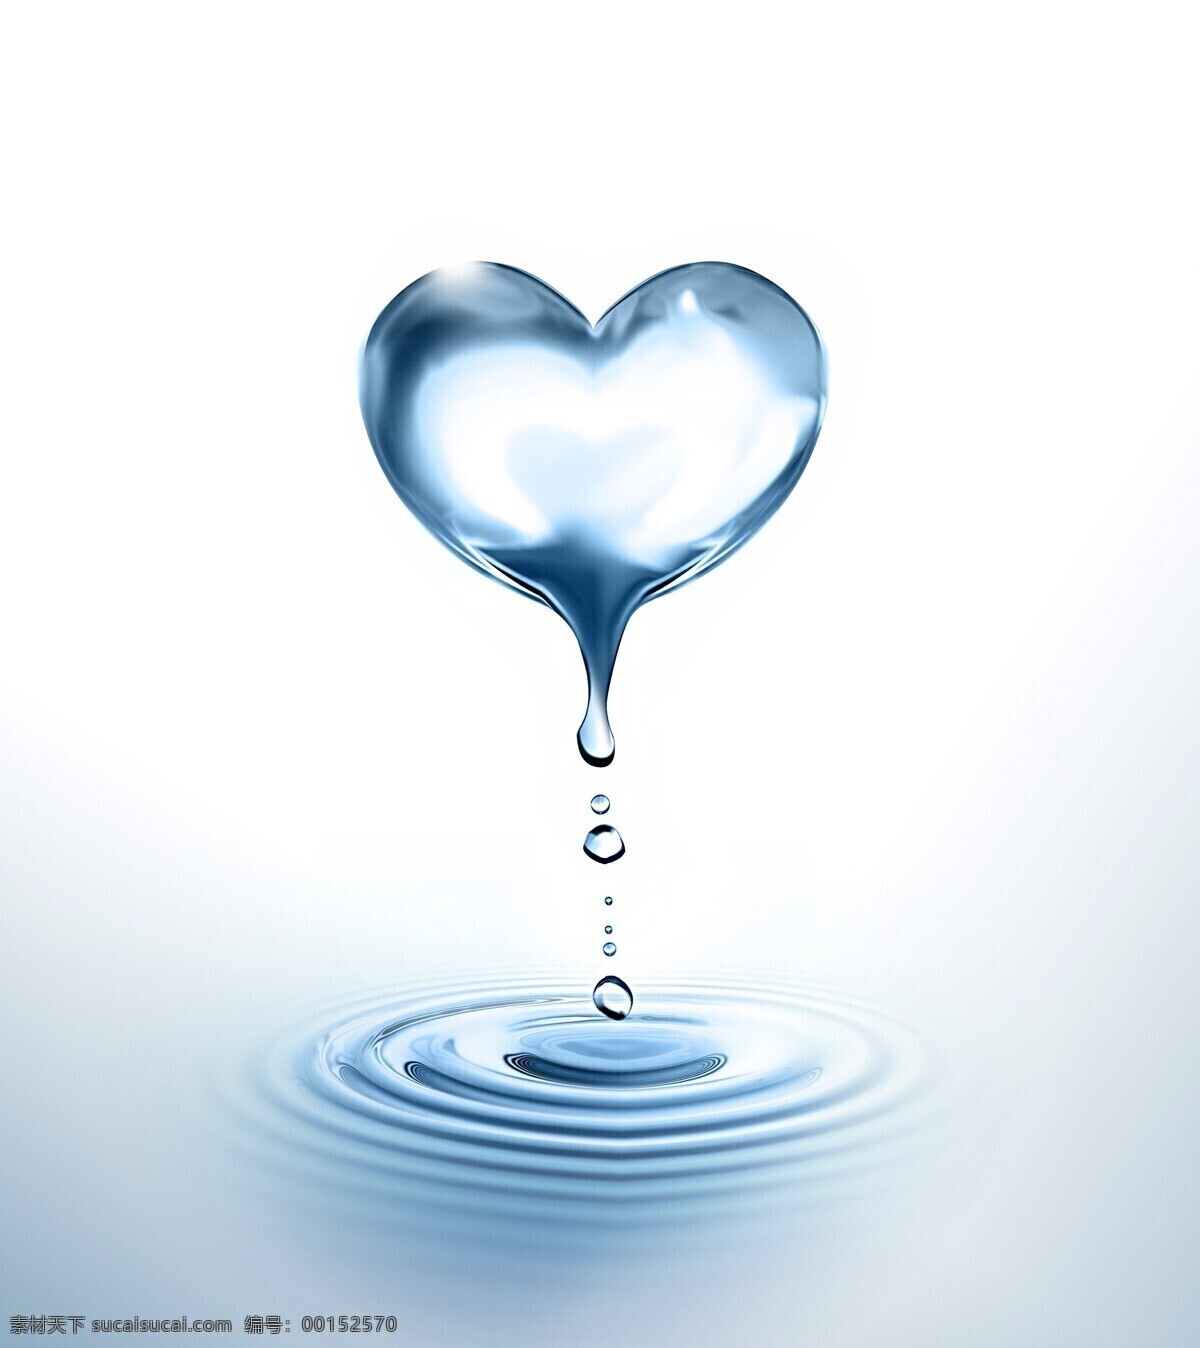 创意 爱心 水滴 高清 用心做好水 广告图片 水纹 水花 水珠 涟漪 心形 纯净水 广告素材 水资源